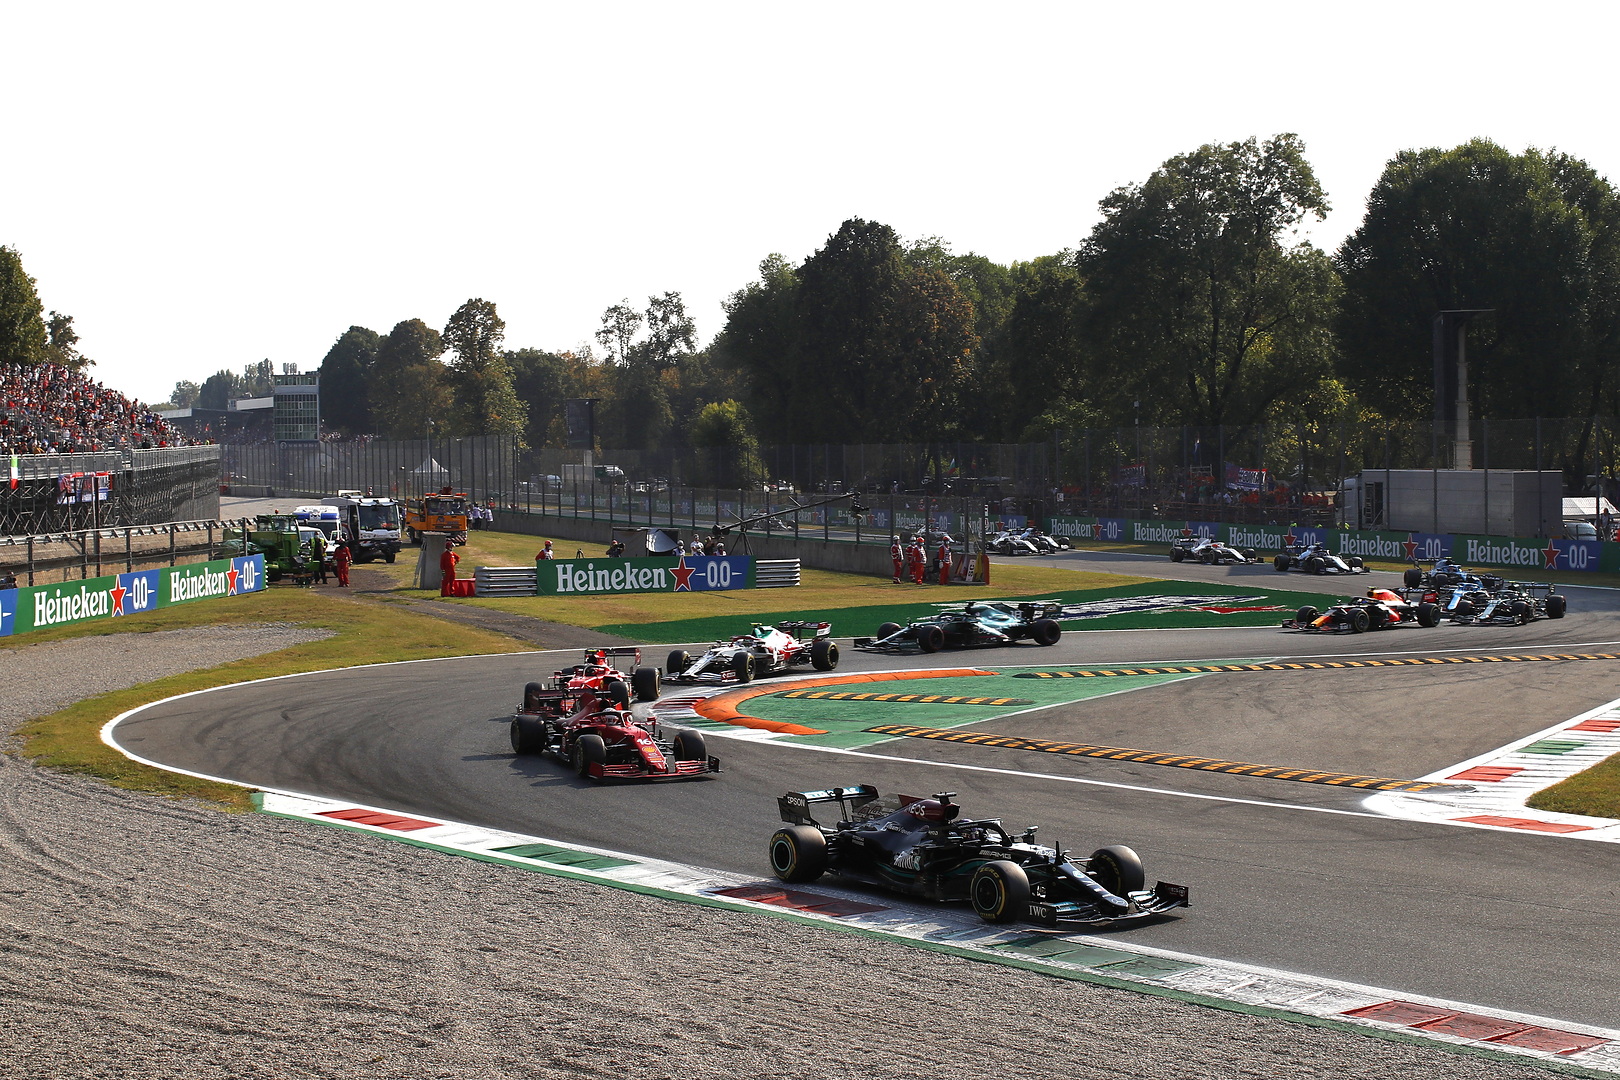 Gp Monza, F1 2022: Orari, programmi e dove vederla